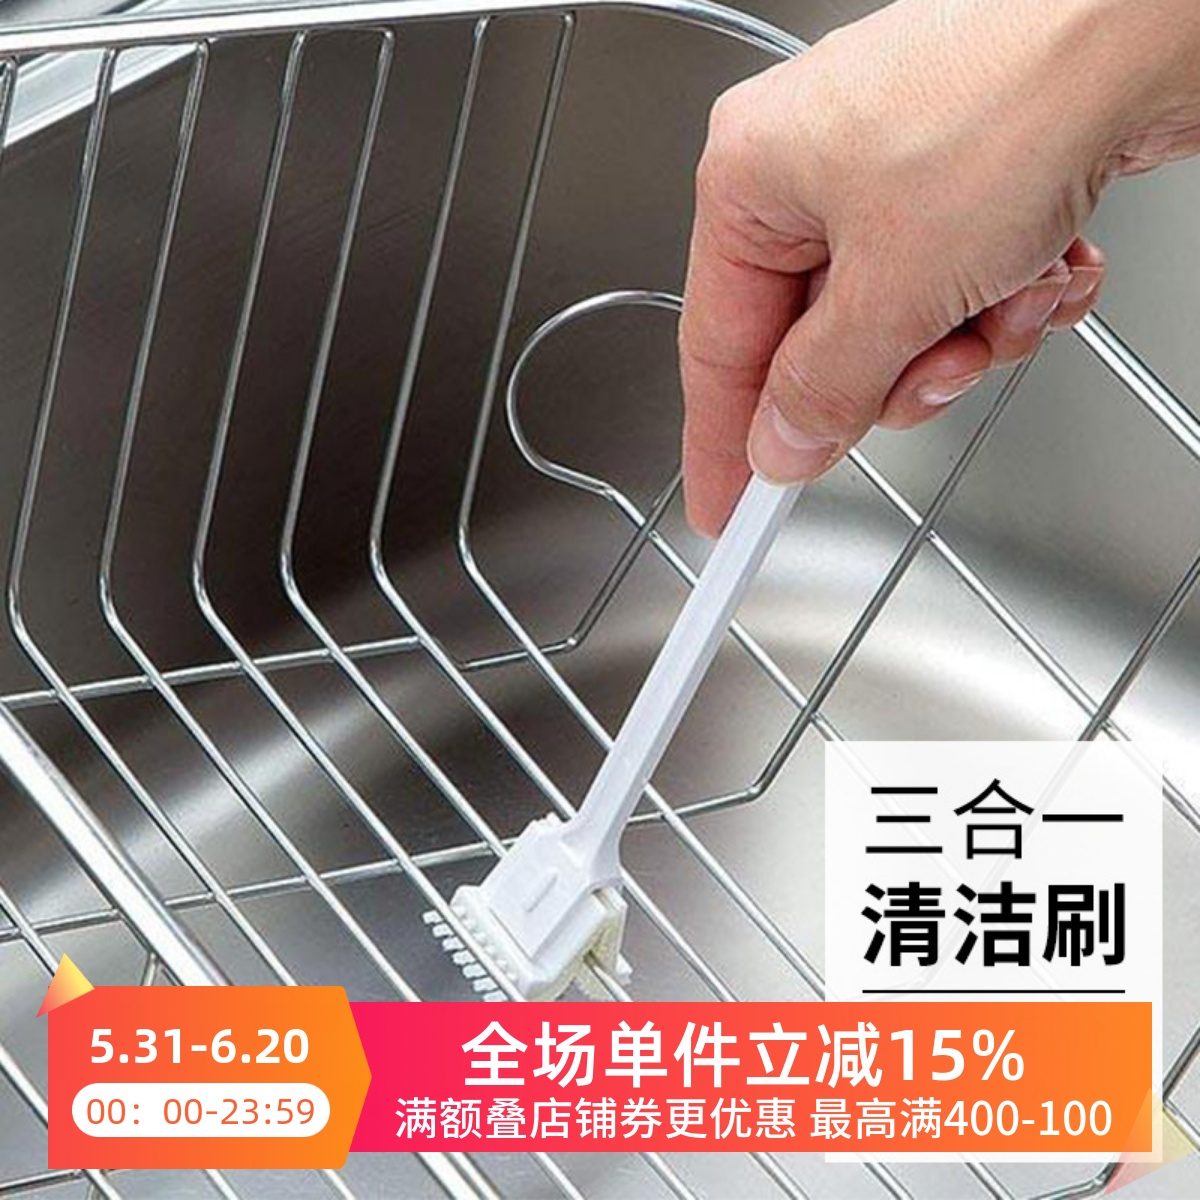 日本进口多功能清洁刷厨房洗碗机烤盘烧烤网去污渍水槽边角缝隙刷